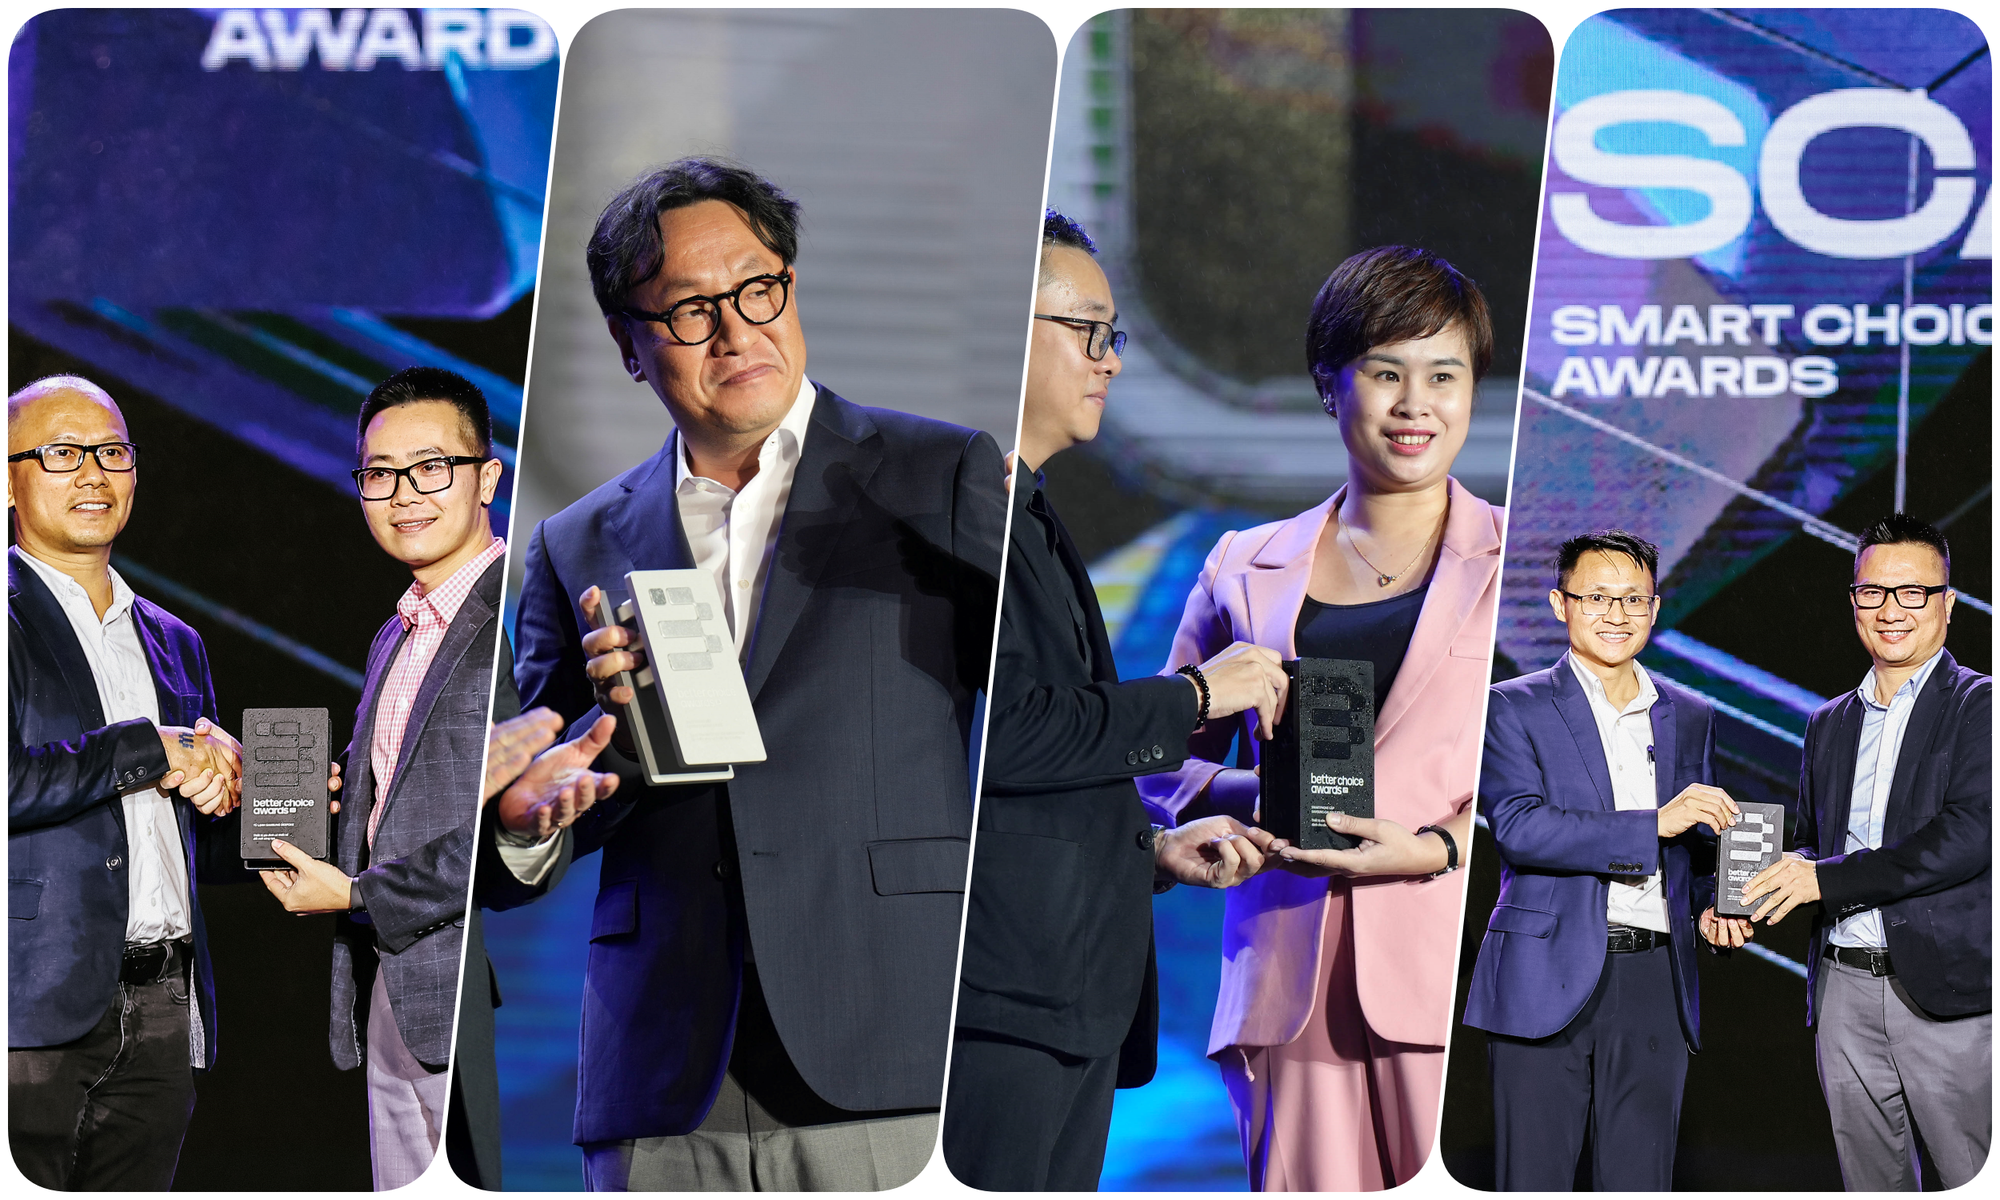 Samsung đại thắng tại Better Choice Awards: Khẳng định vị thế hãng công nghệ đi đầu trong đổi mới sáng tạo - Ảnh 1.